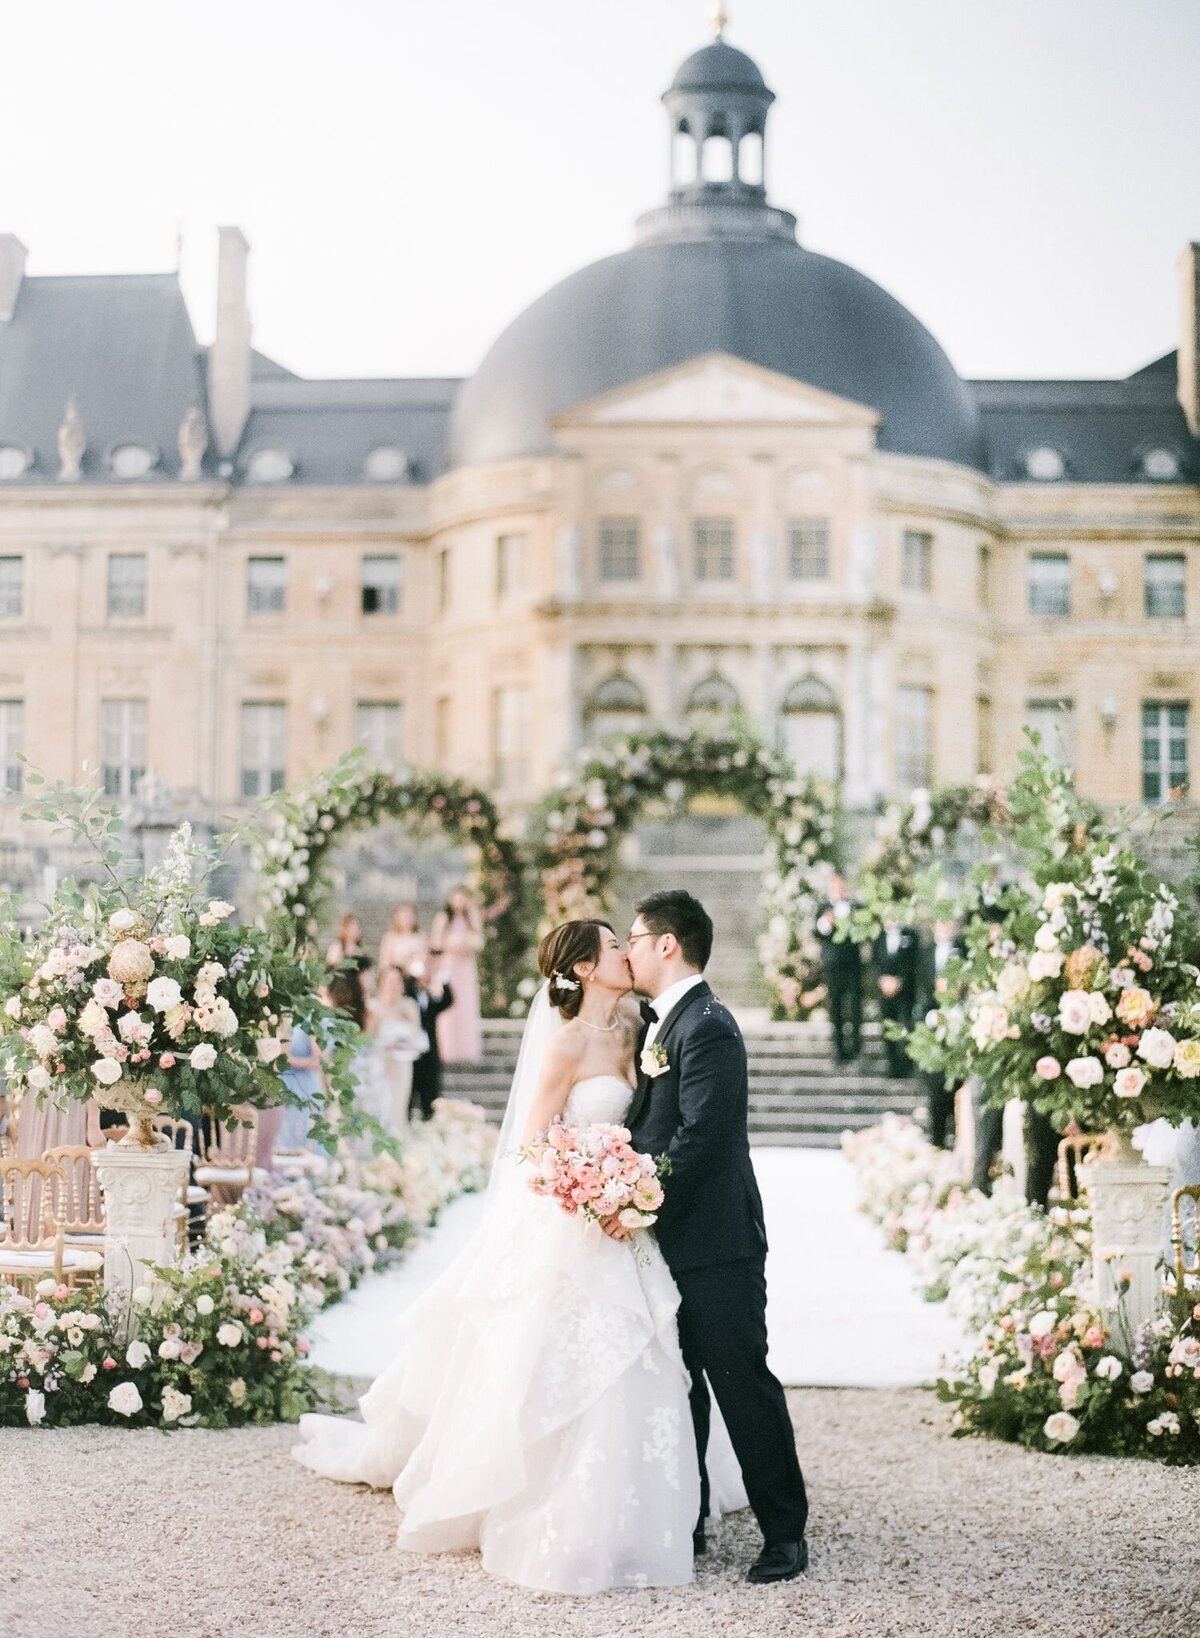 Chateau-de-Vaux-le-Vicomte-wedding-florist-Floraison17